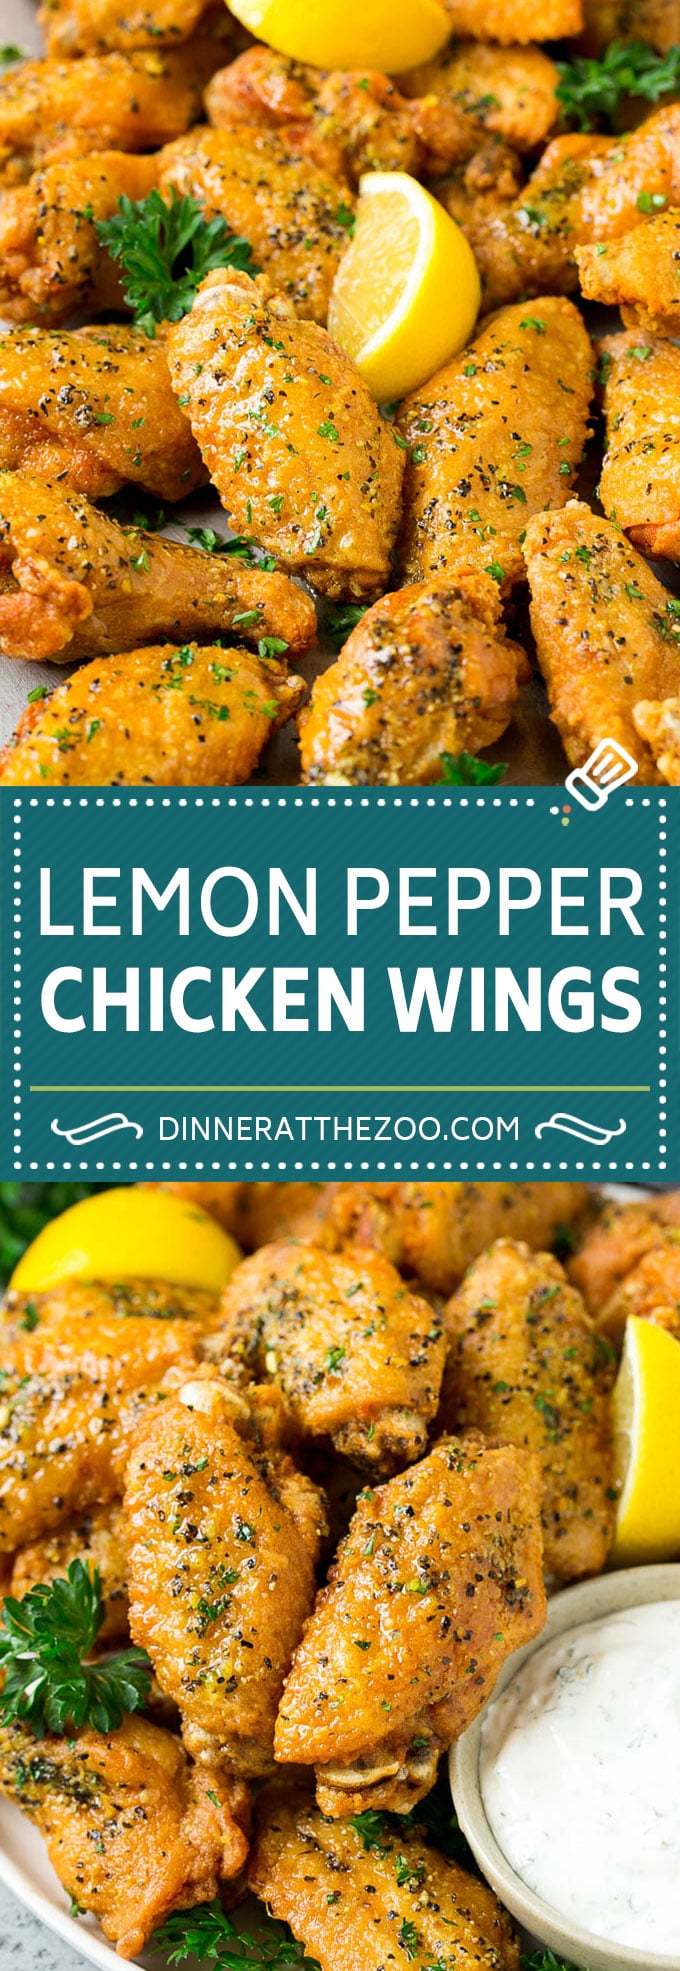 Lemon Pepper Wings Recipe | Lemon Pepper Chicken | Fried Chicken Wings #chicken #chickenwings #wings #appetizer #lemon #dinner #dinneratthezoo